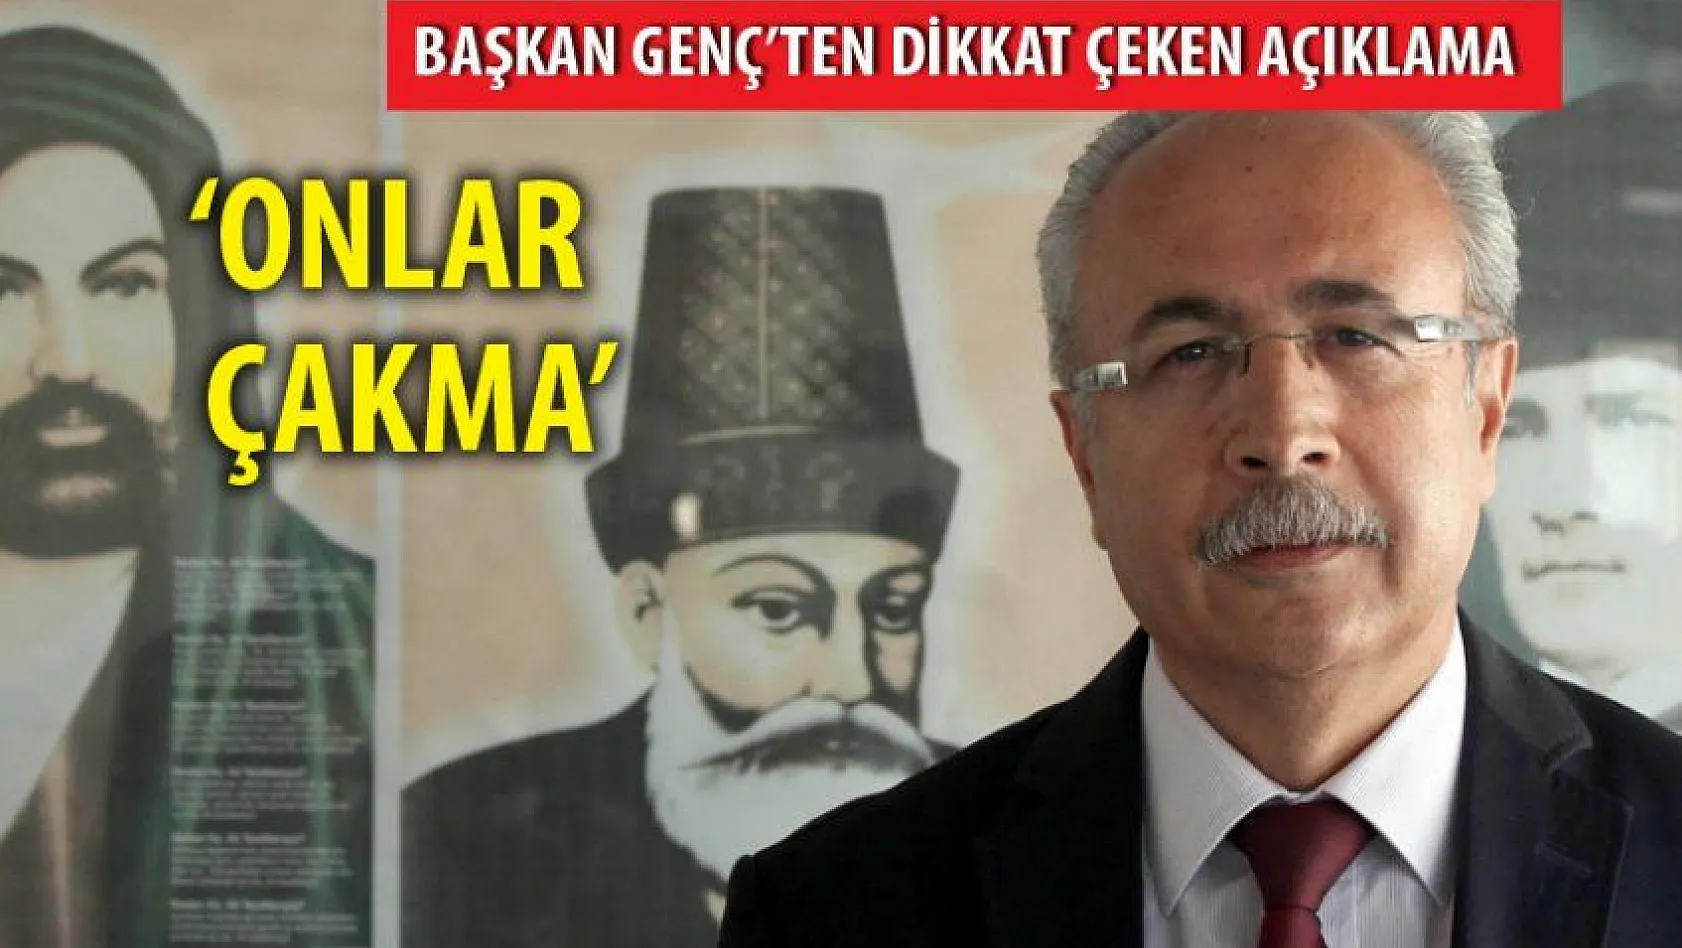 Kayseri Alevi Derneği Başkanı Genç: &quotOnlar çakma"